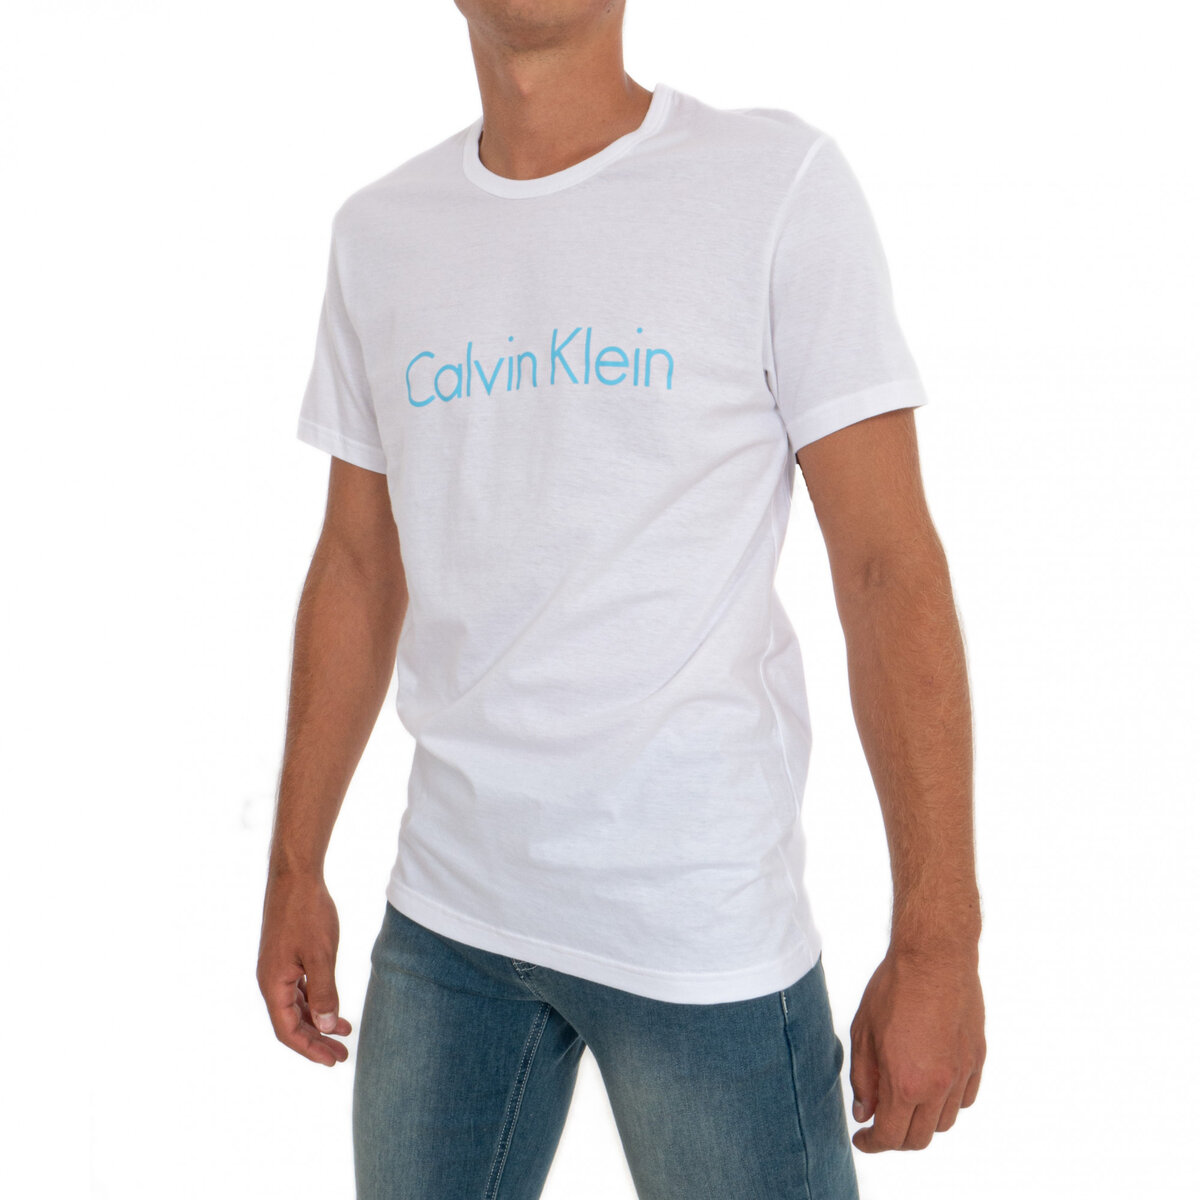 Pánské tričko SHWZ7O bílá - Calvin Klein, bílá S i10_P38539_1:5_2:92_